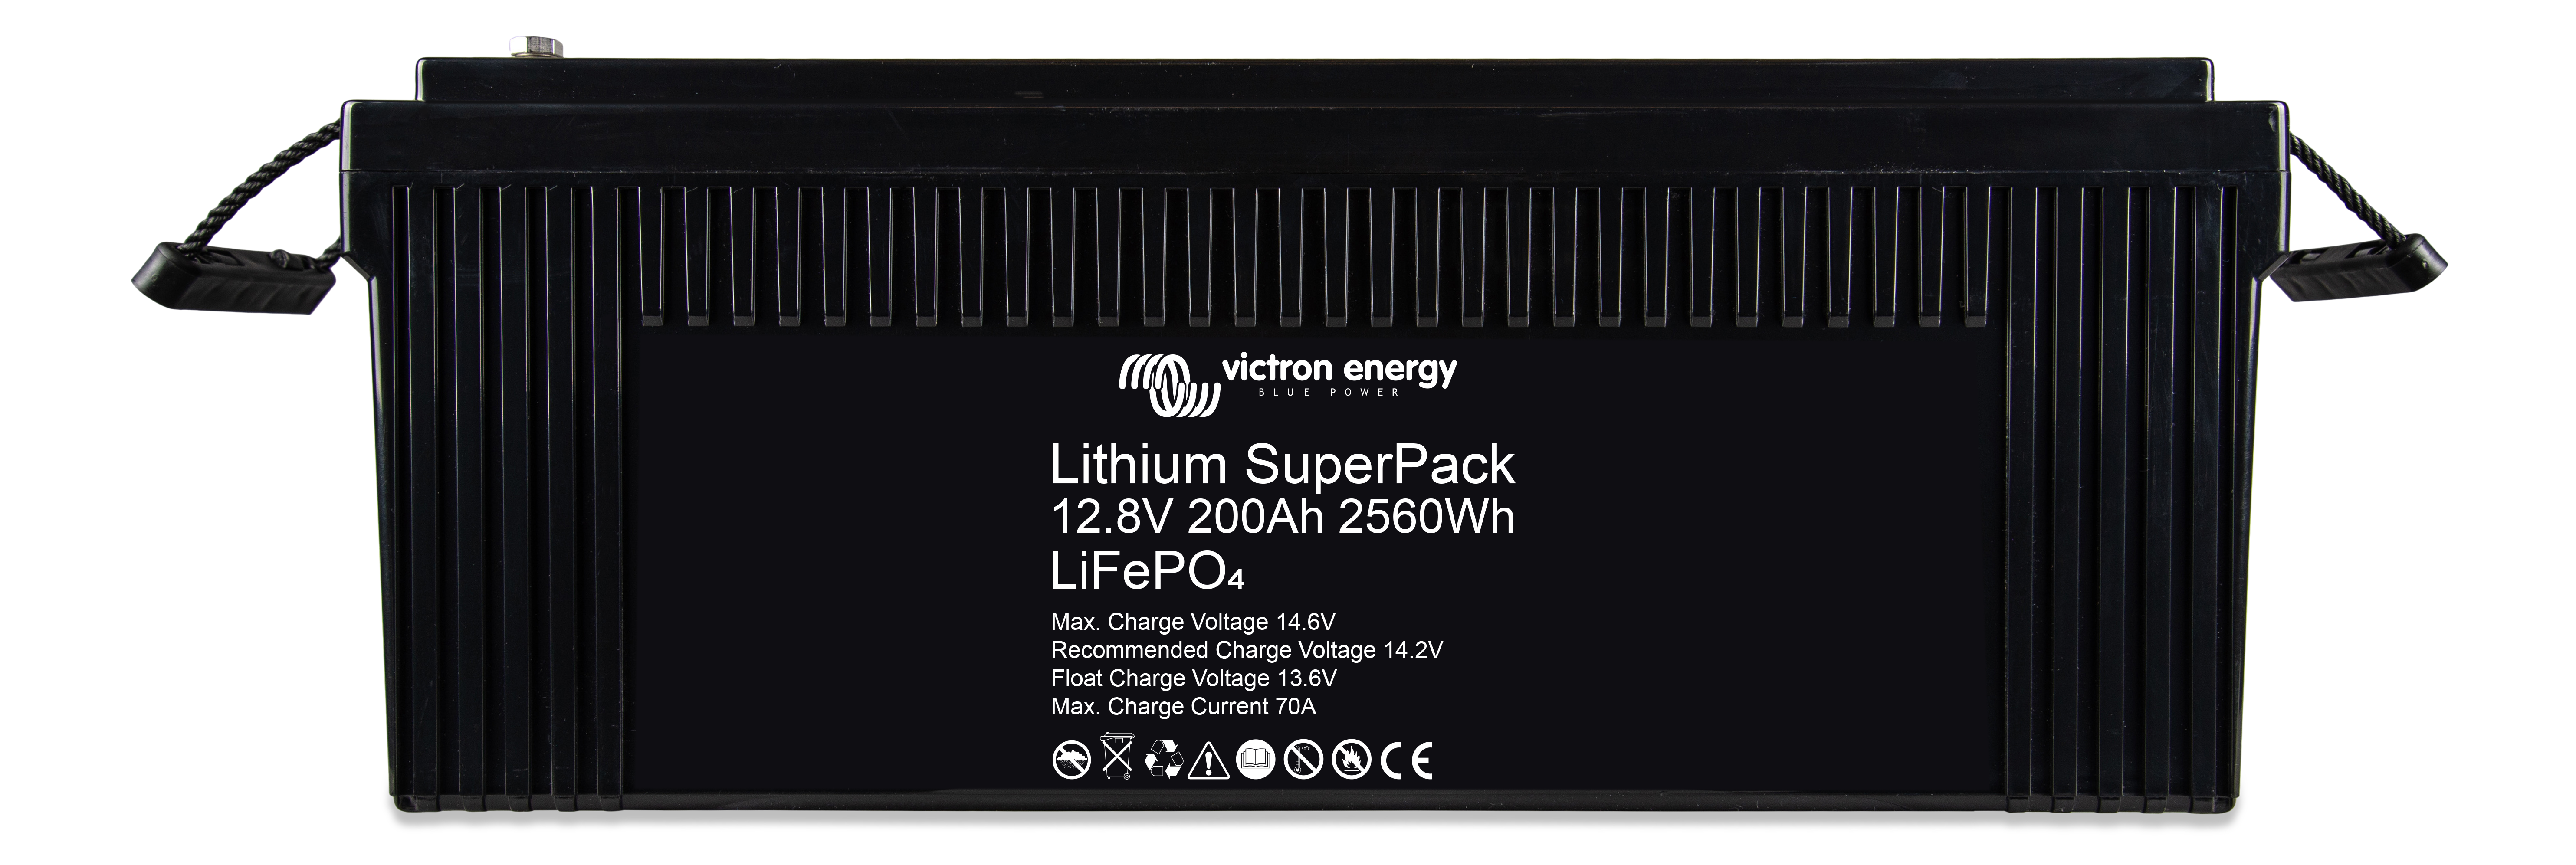 Lithium SuperPack 12,8V & 25,6V - Victron Energy